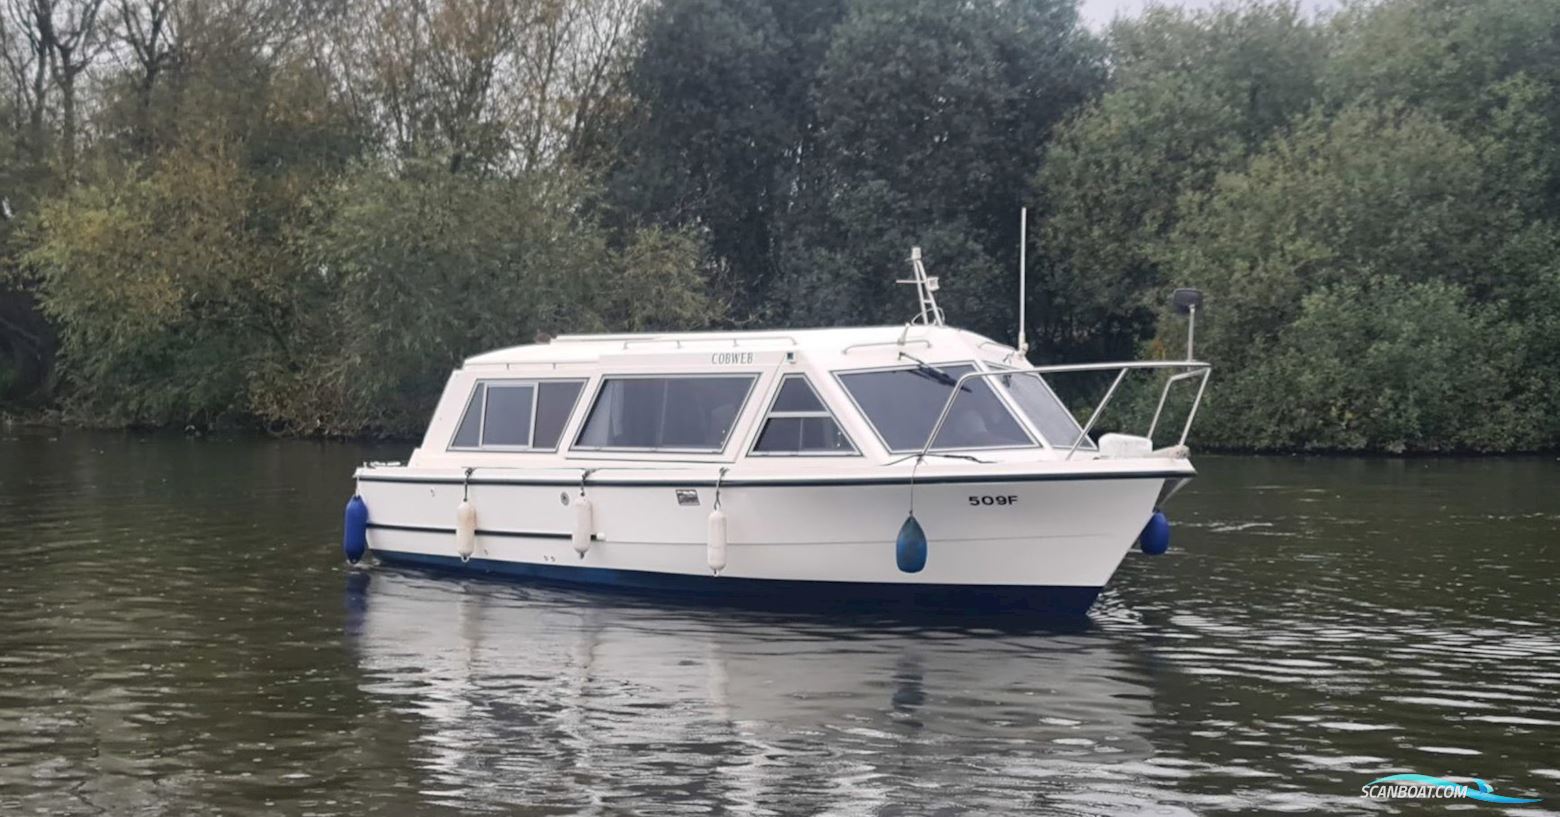 Sheerline 740 Motorbåd 2000, med Nanni motor, England